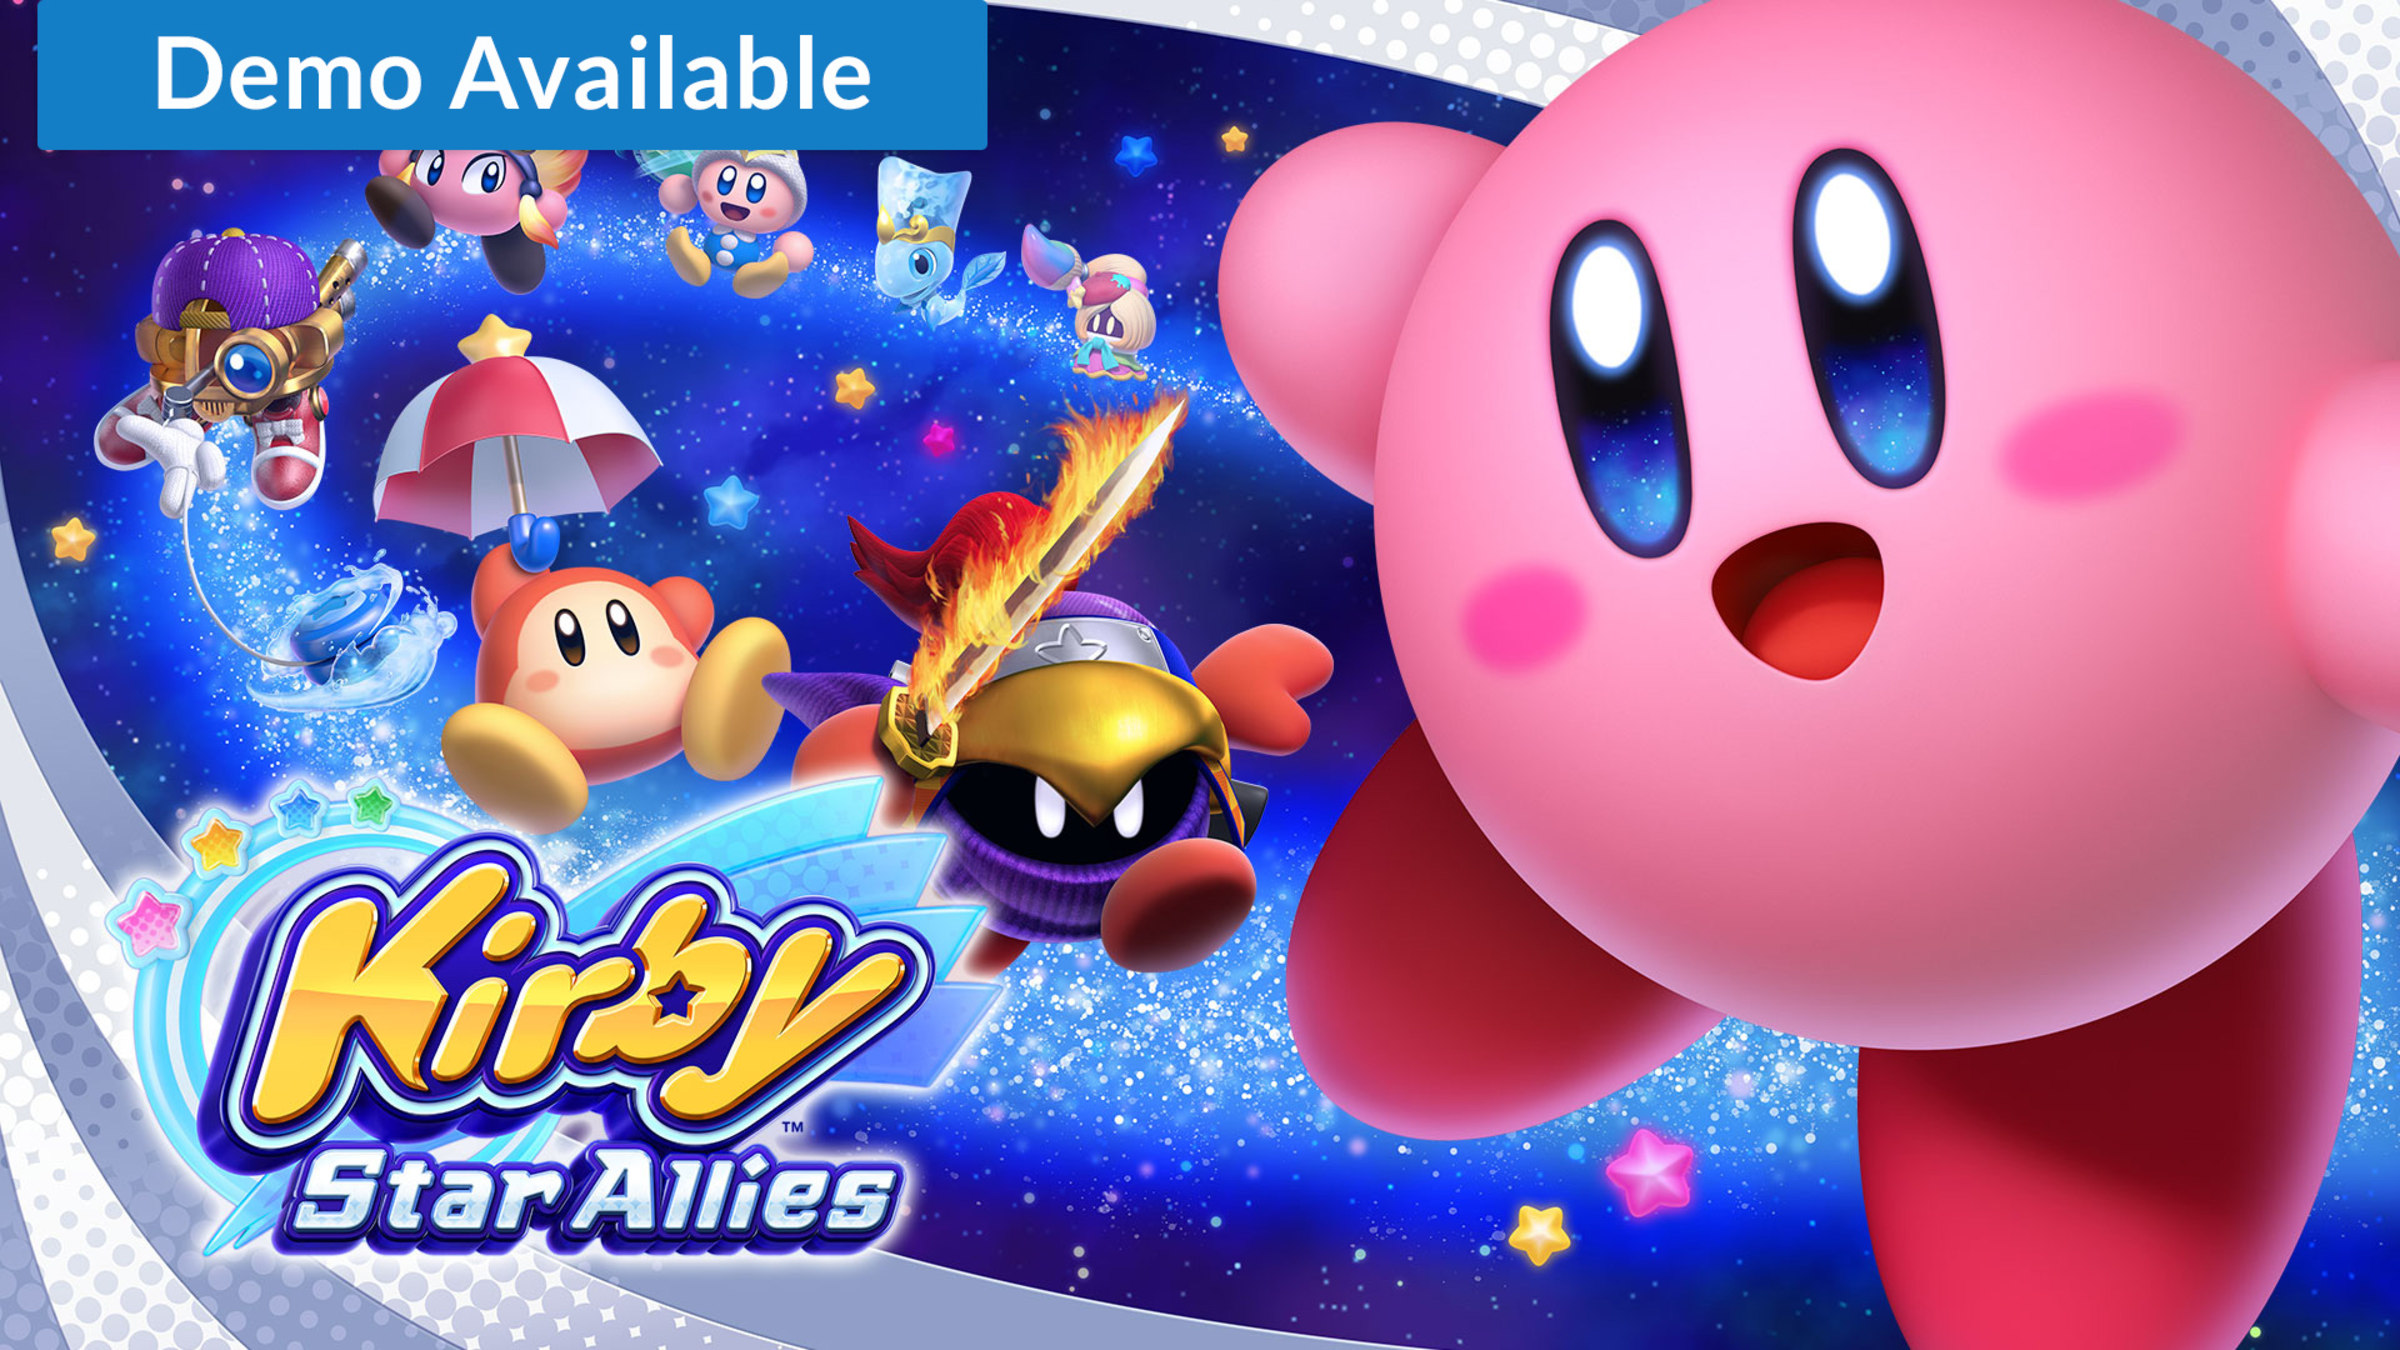 Kirby Star Allies Para Switch